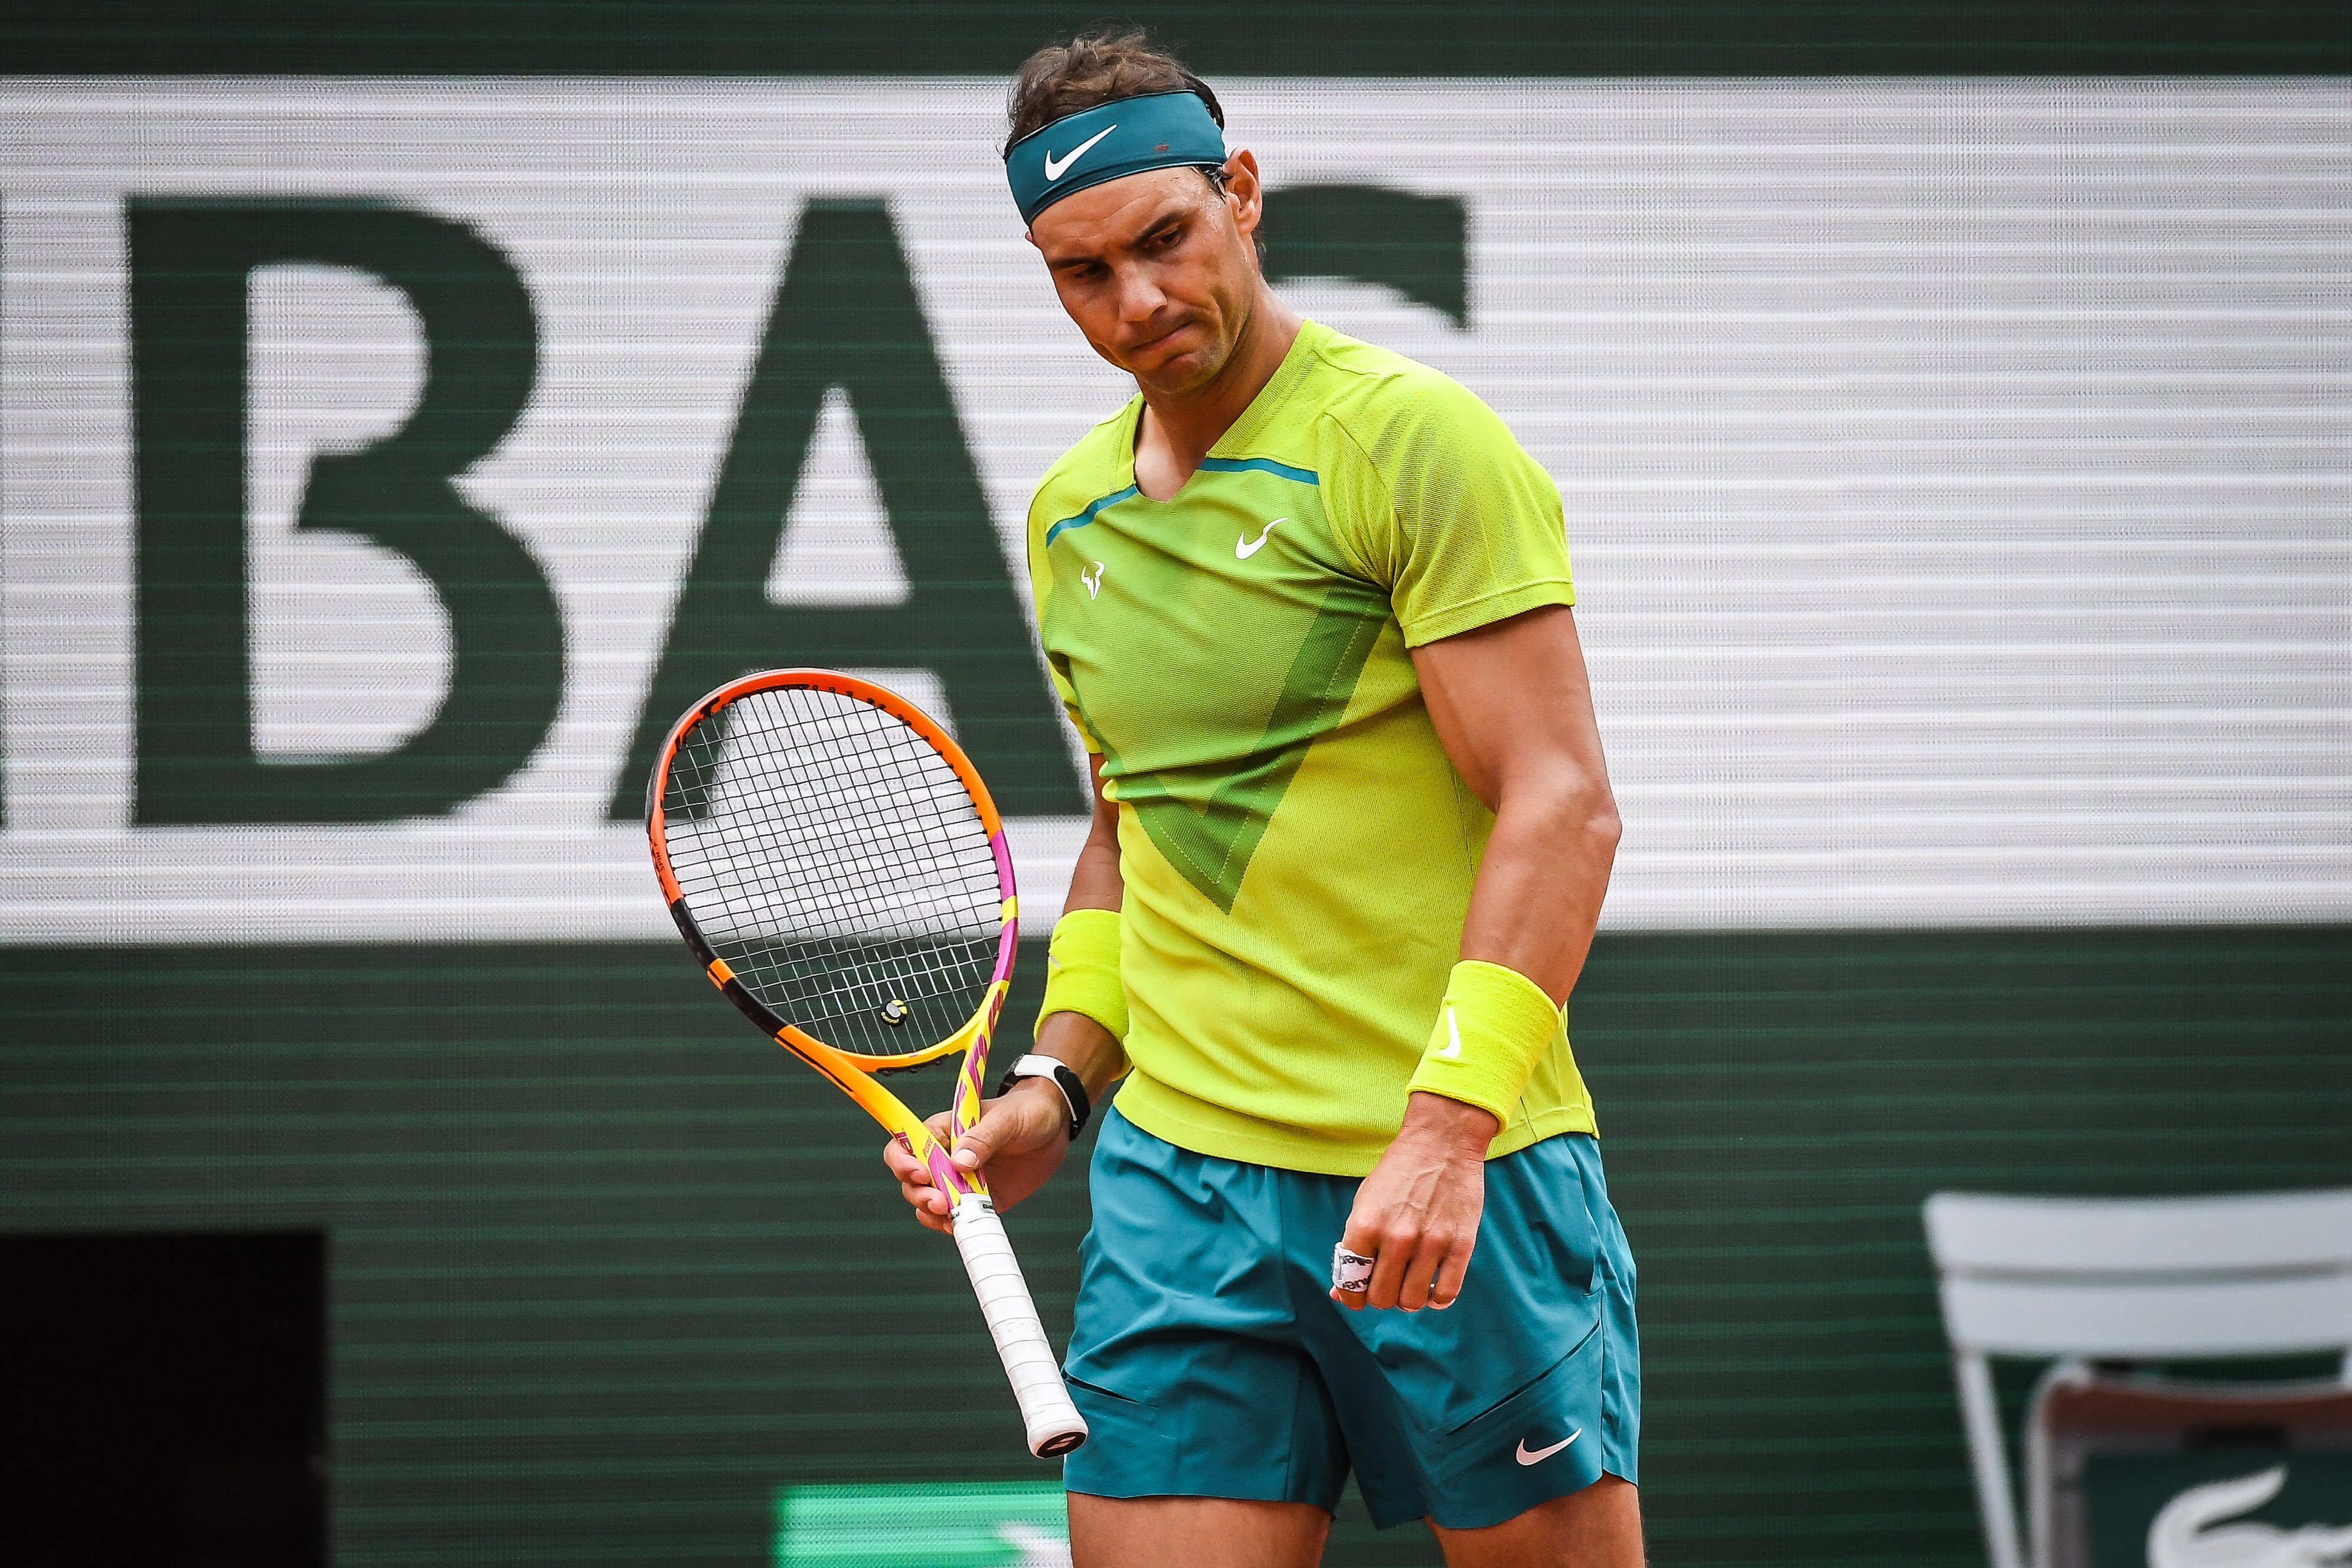 Polémica con Rafa Nadal y las infiltraciones por su lesión: ¿dopaje o legal?